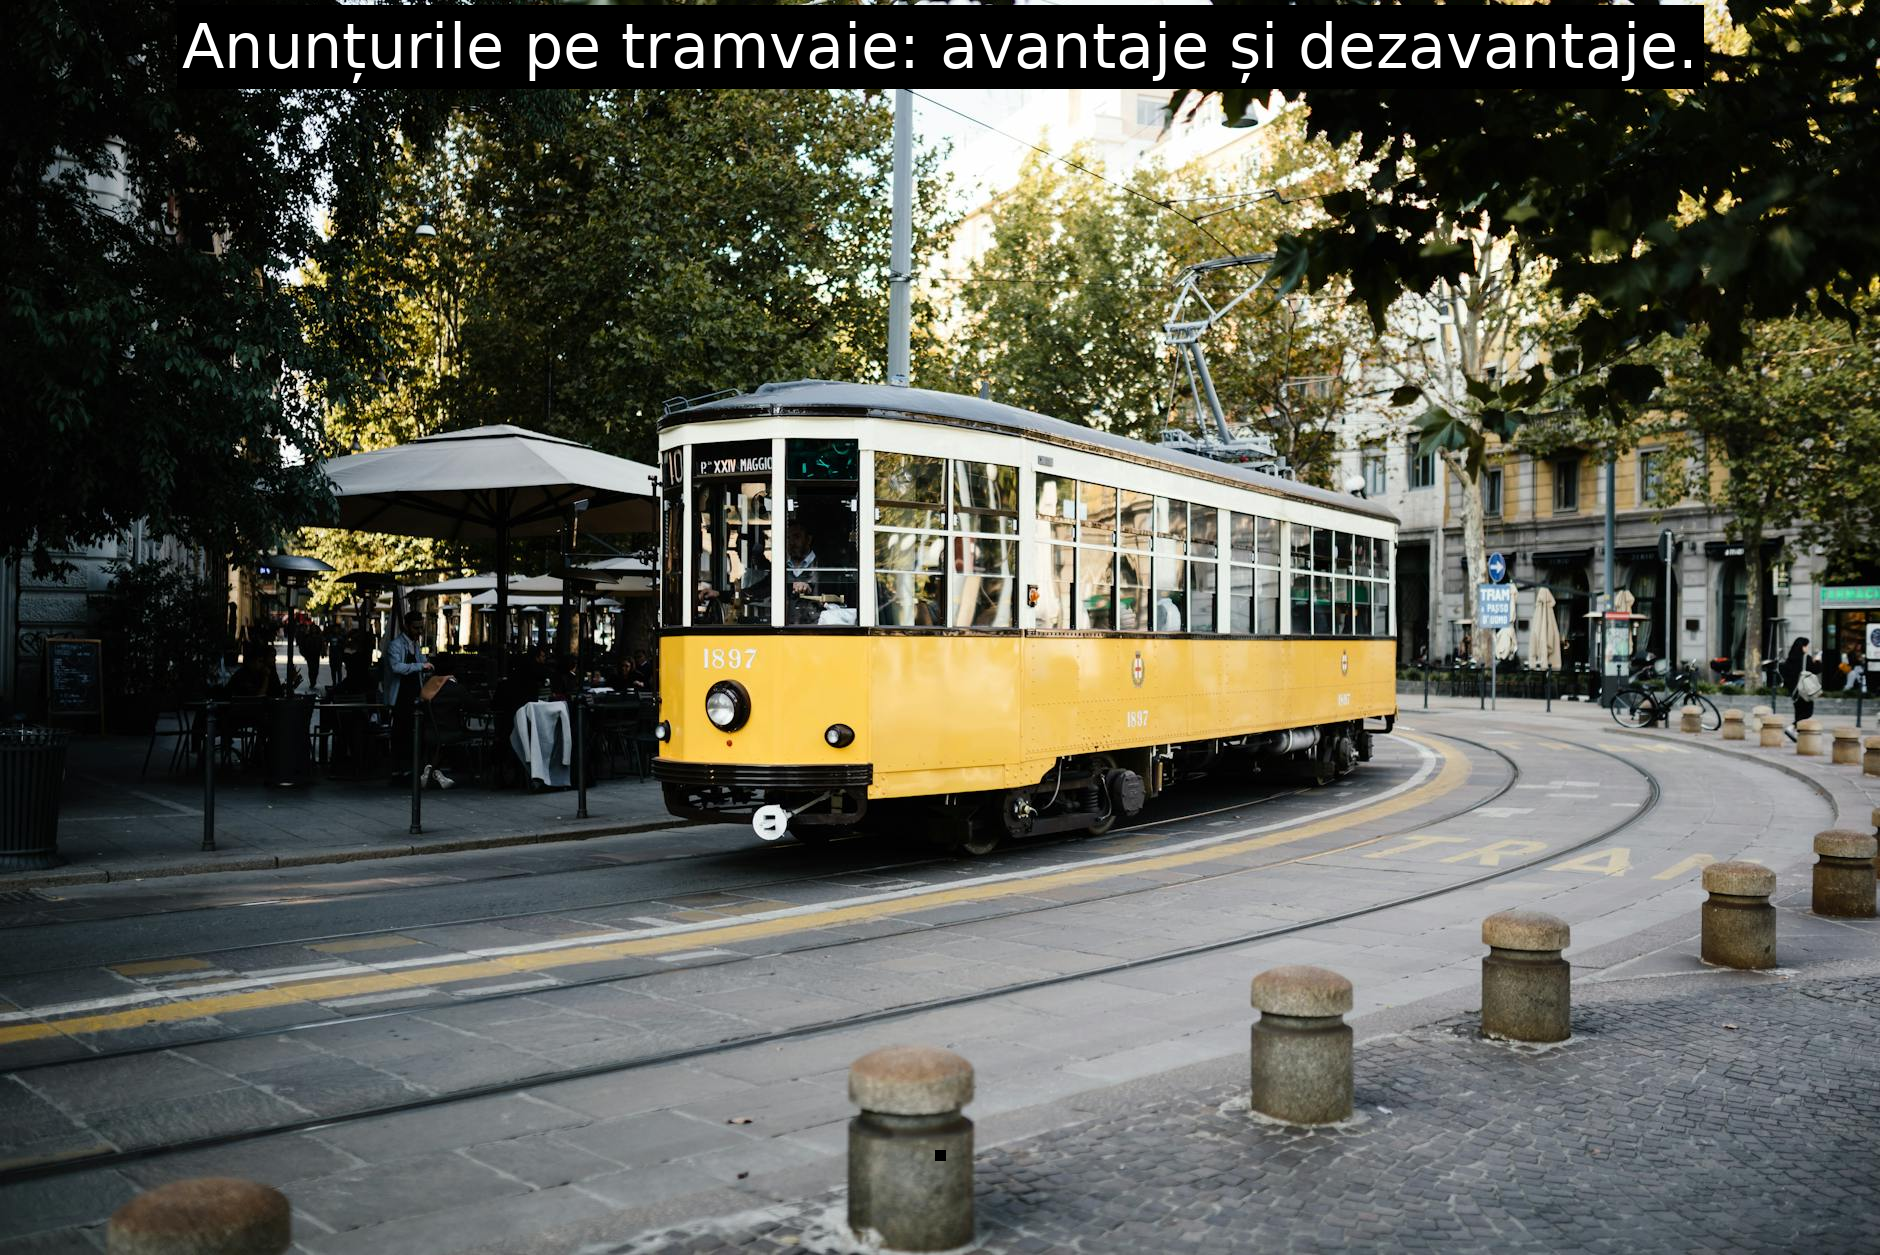 Anunțurile pe tramvaie: avantaje și dezavantaje.